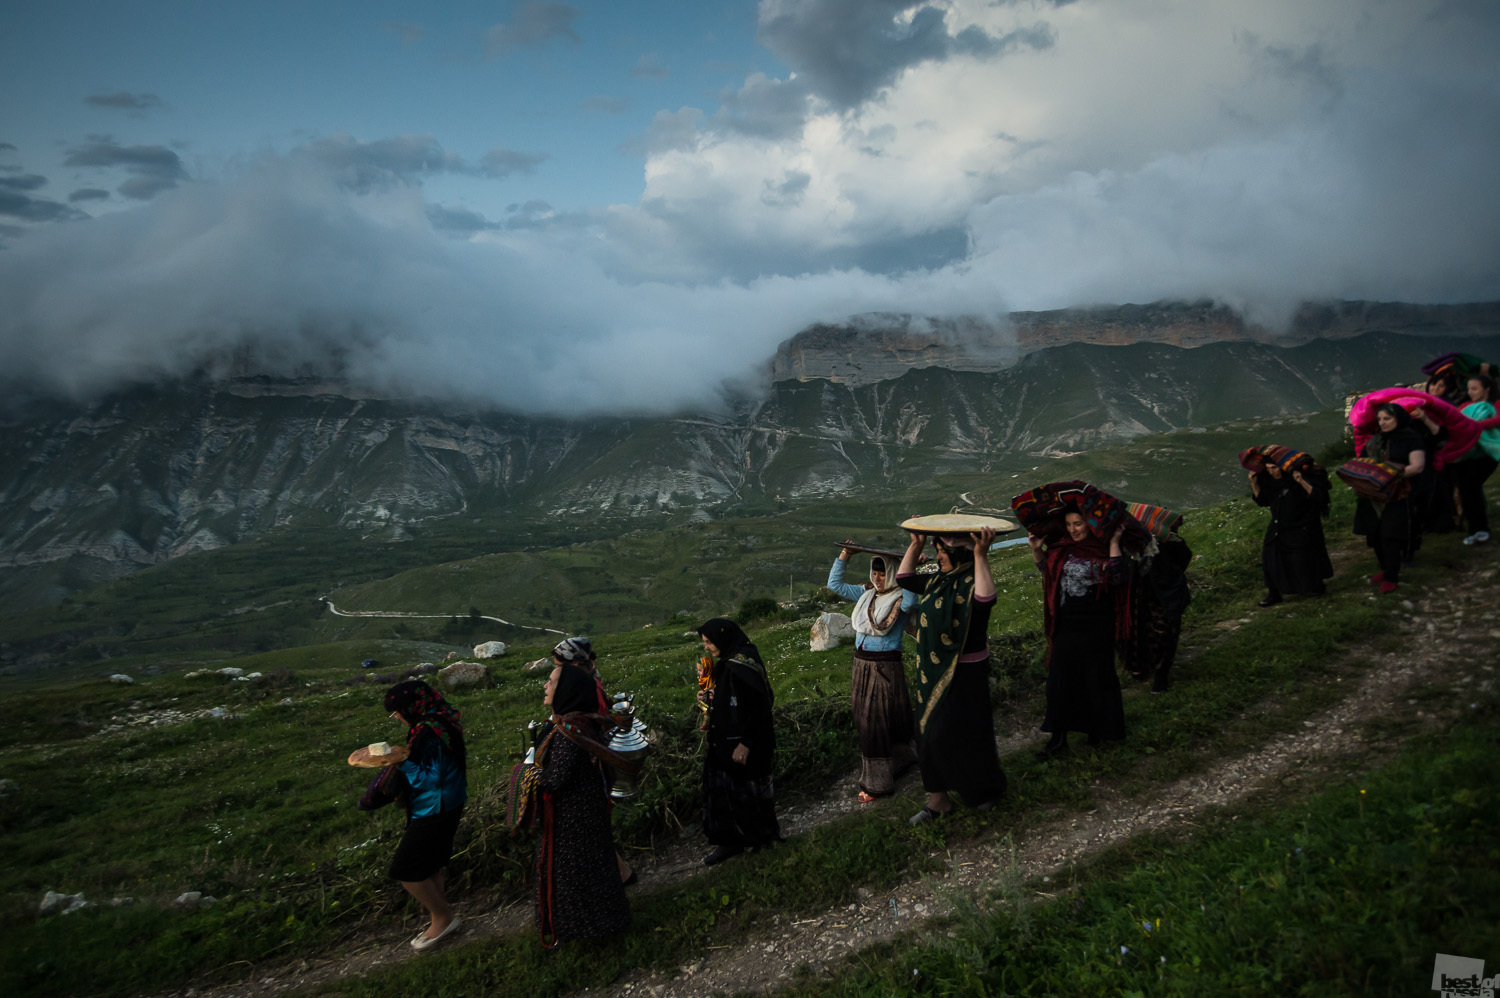 Meski demikian, banyak gambar yang menarik dari sudut pandang etnografis, seperti pernikahan kaum gipsi dan Muslim yang menampilkan adat dan tradisi lokal. // Hari kedua pernikahan. Membawa mahar ke tempat tinggal pengantin baru, Desa Balkhar, Dagestan